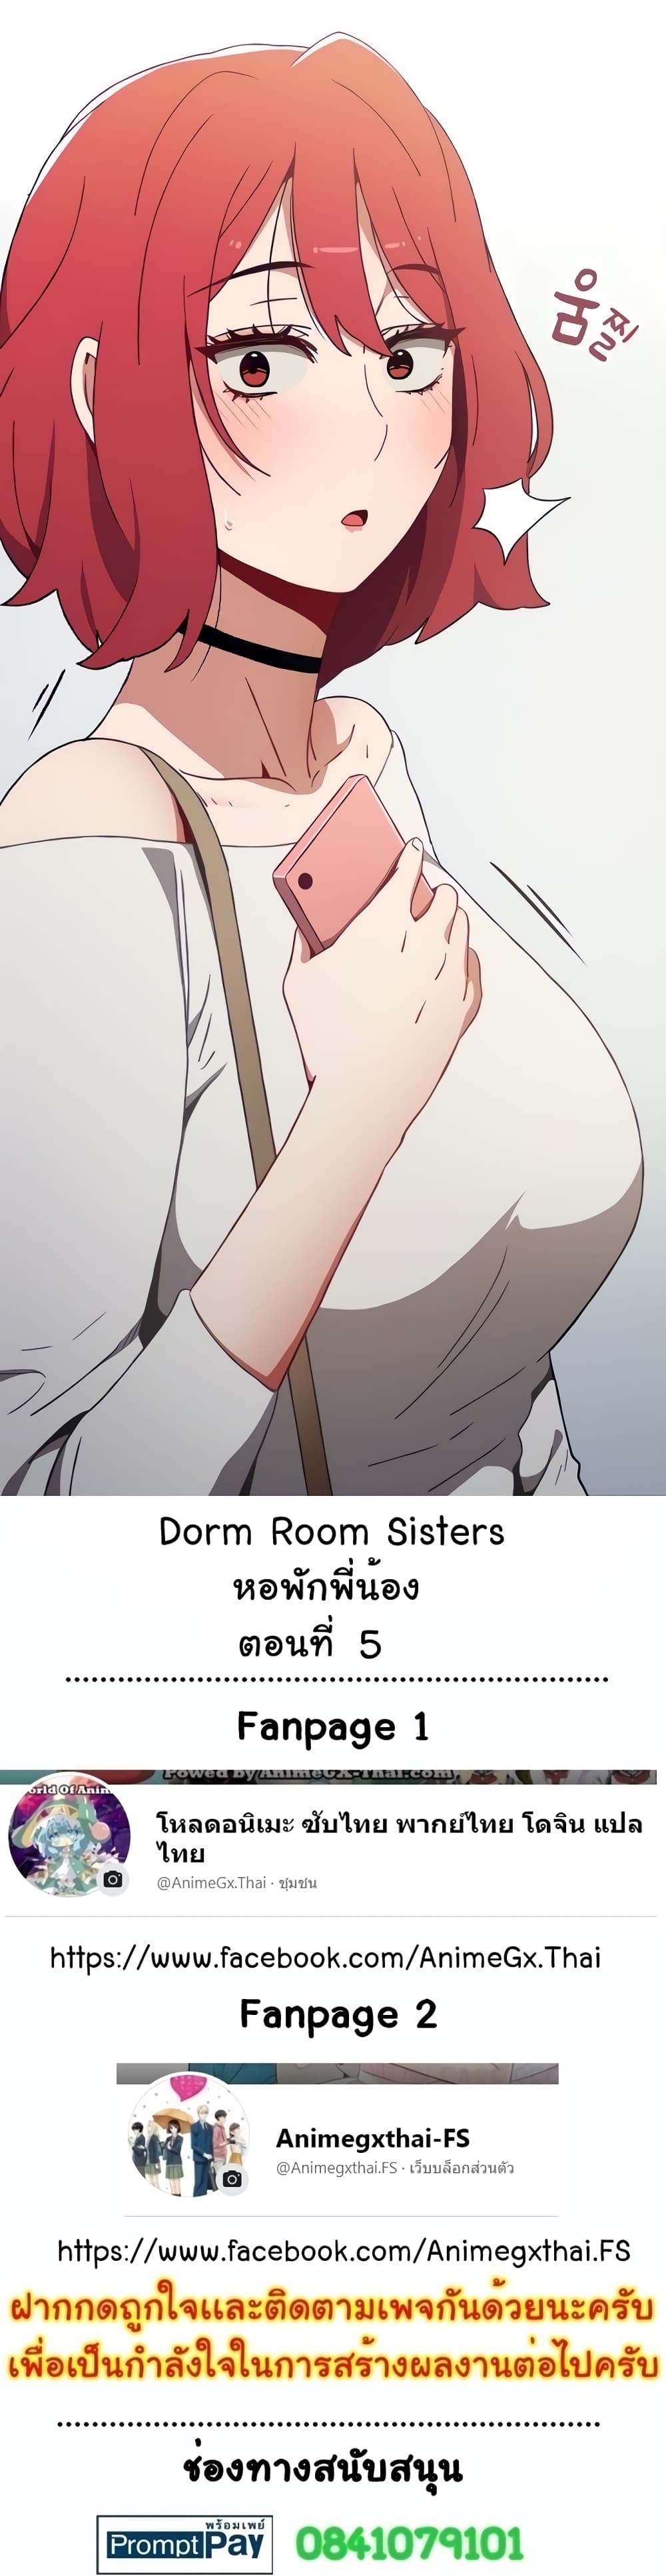 Dorm-Room-Sisters-5_01.jpg